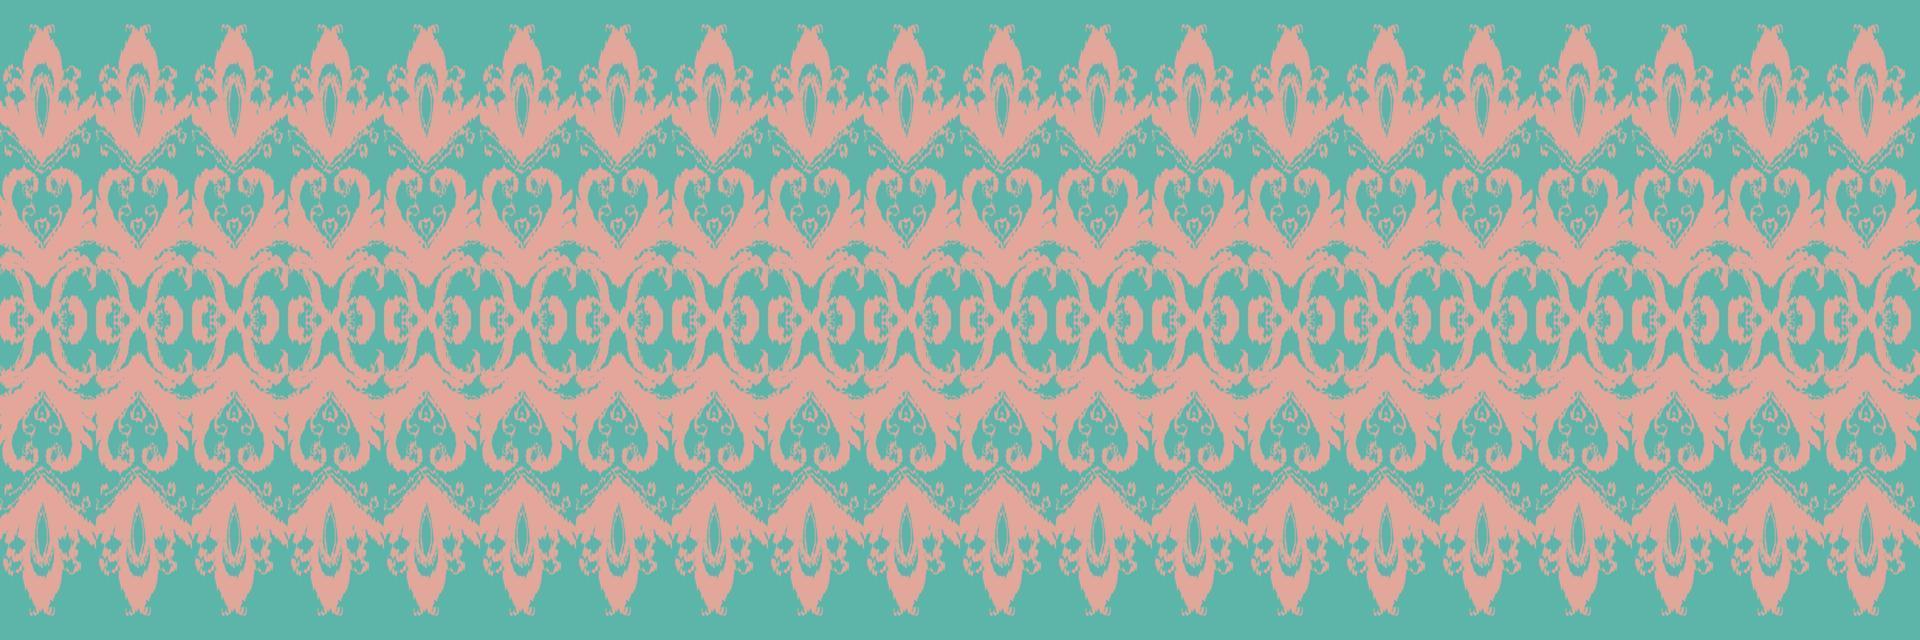 batik têxtil ikkat ou ikat flores padrão sem costura design de vetor digital para impressão saree kurti borneo tecido borda escova símbolos amostras roupas de festa